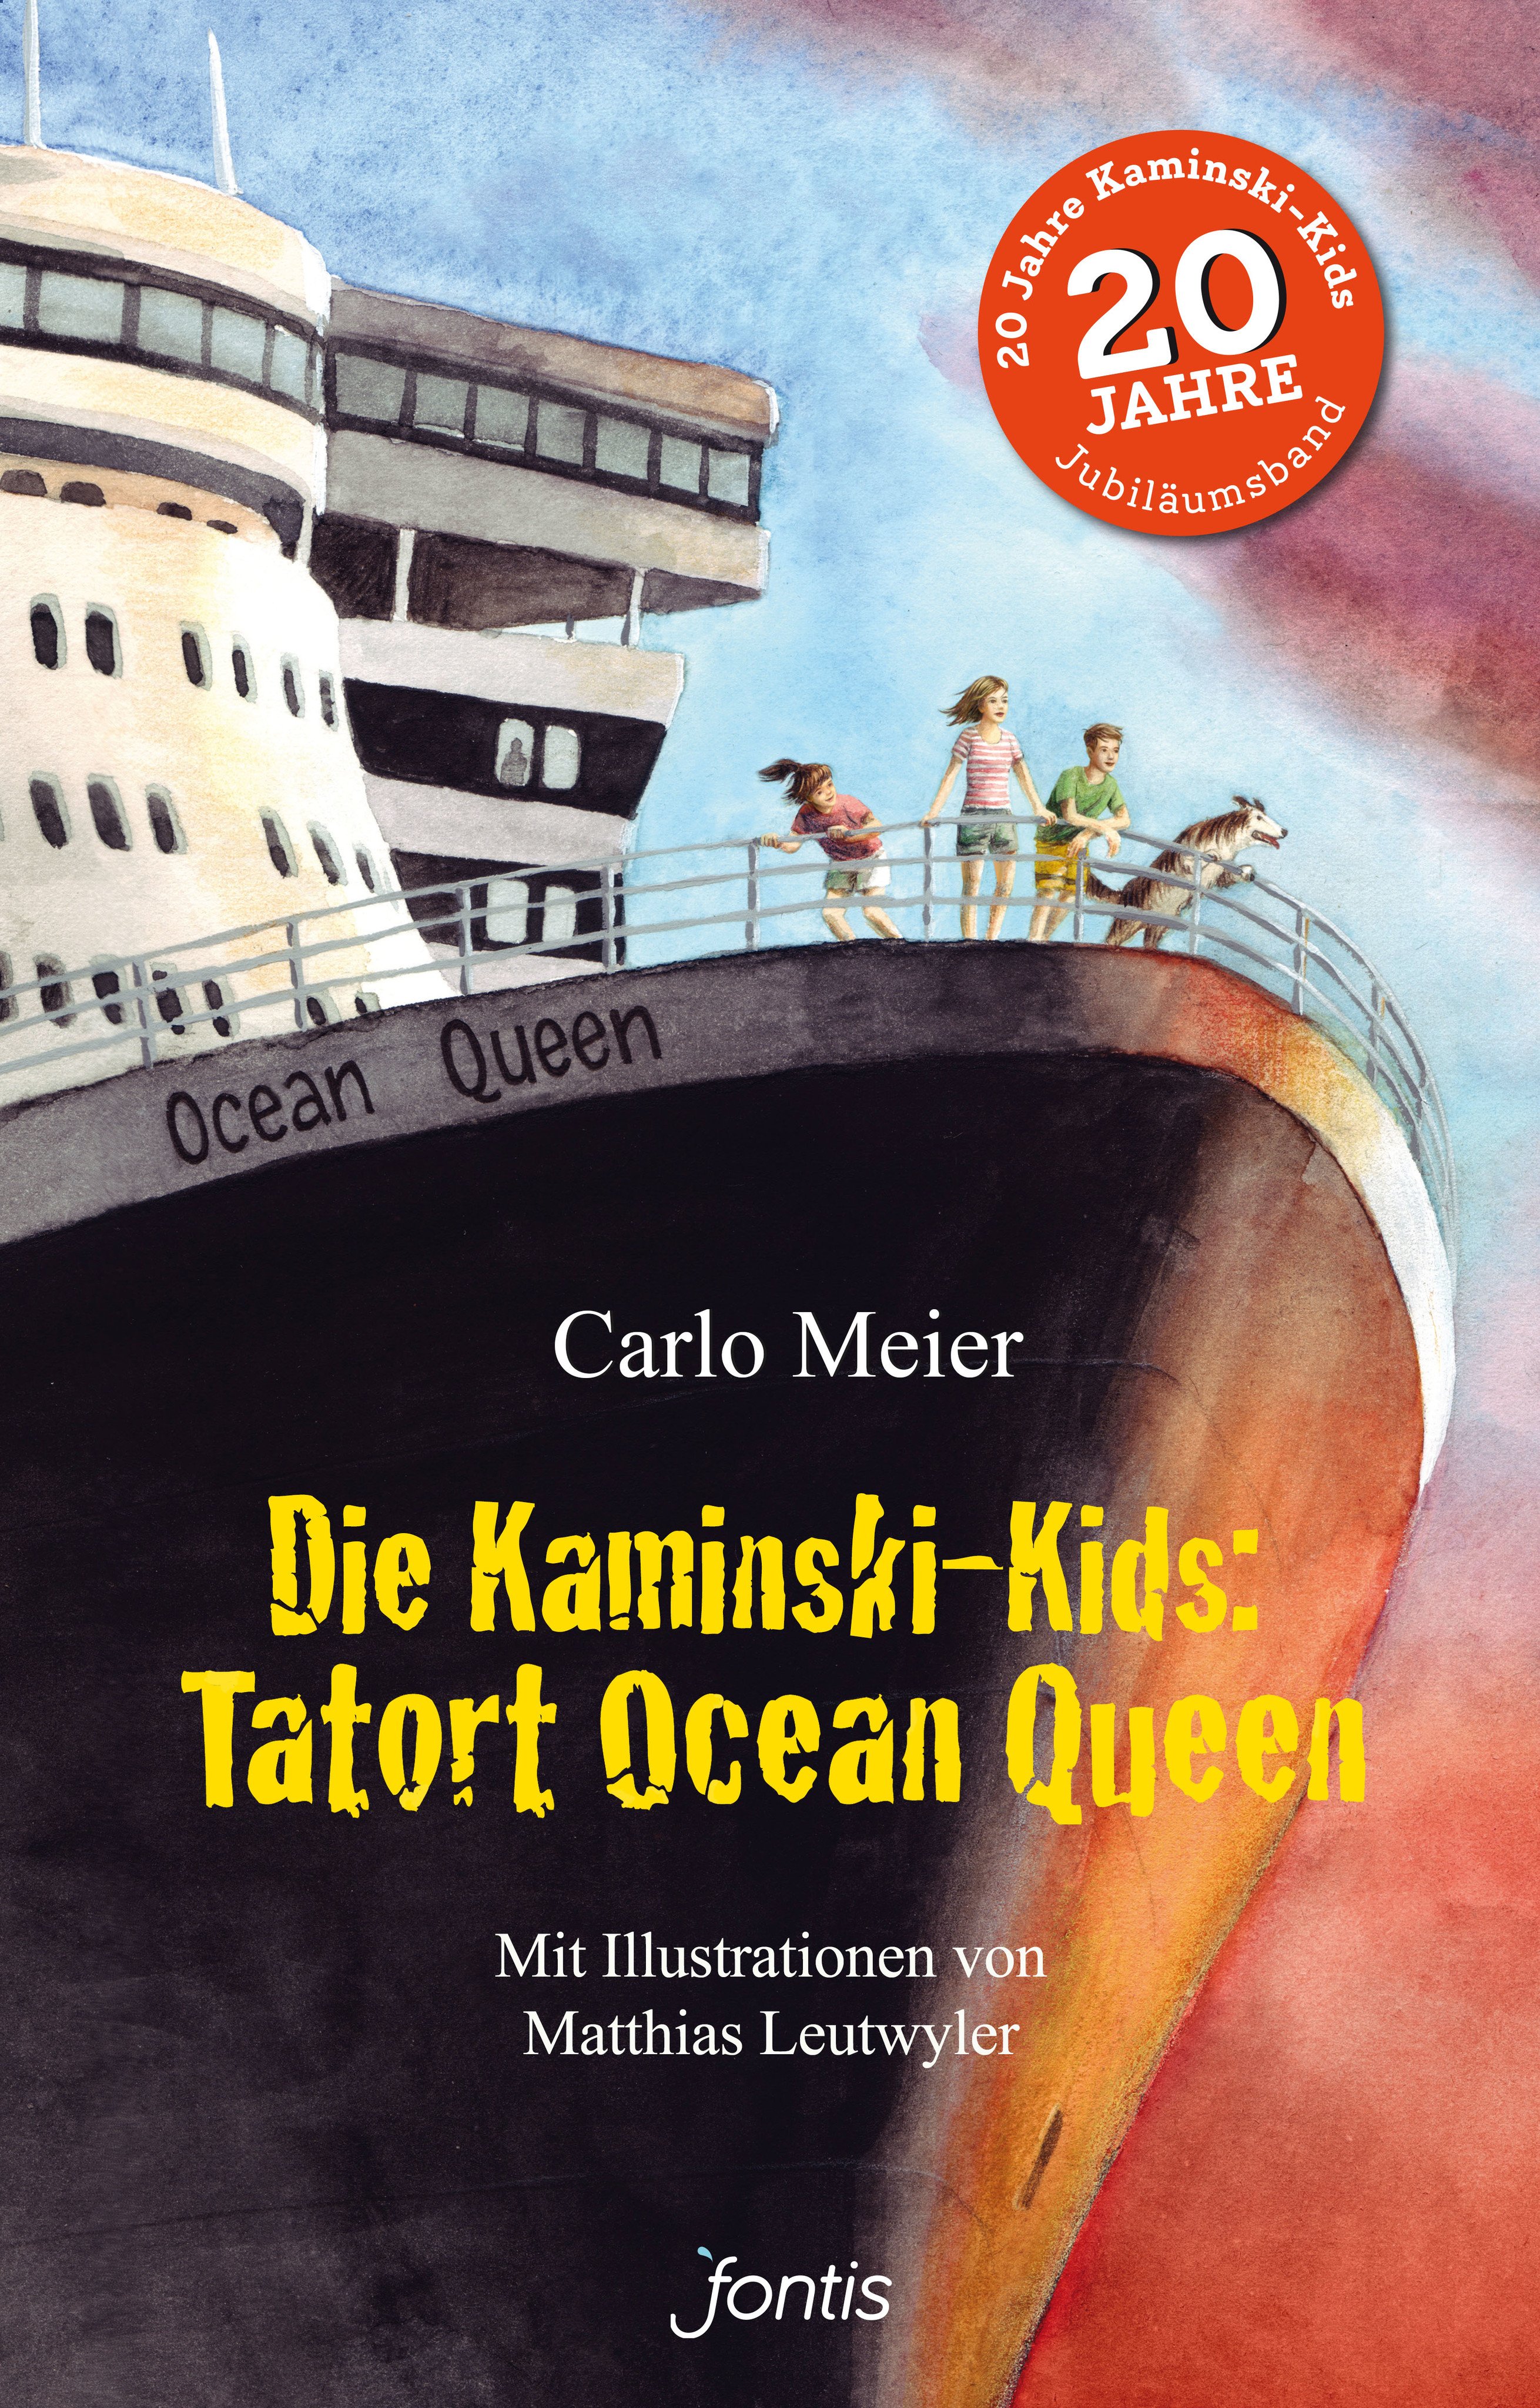 Tatort Ocean Queen